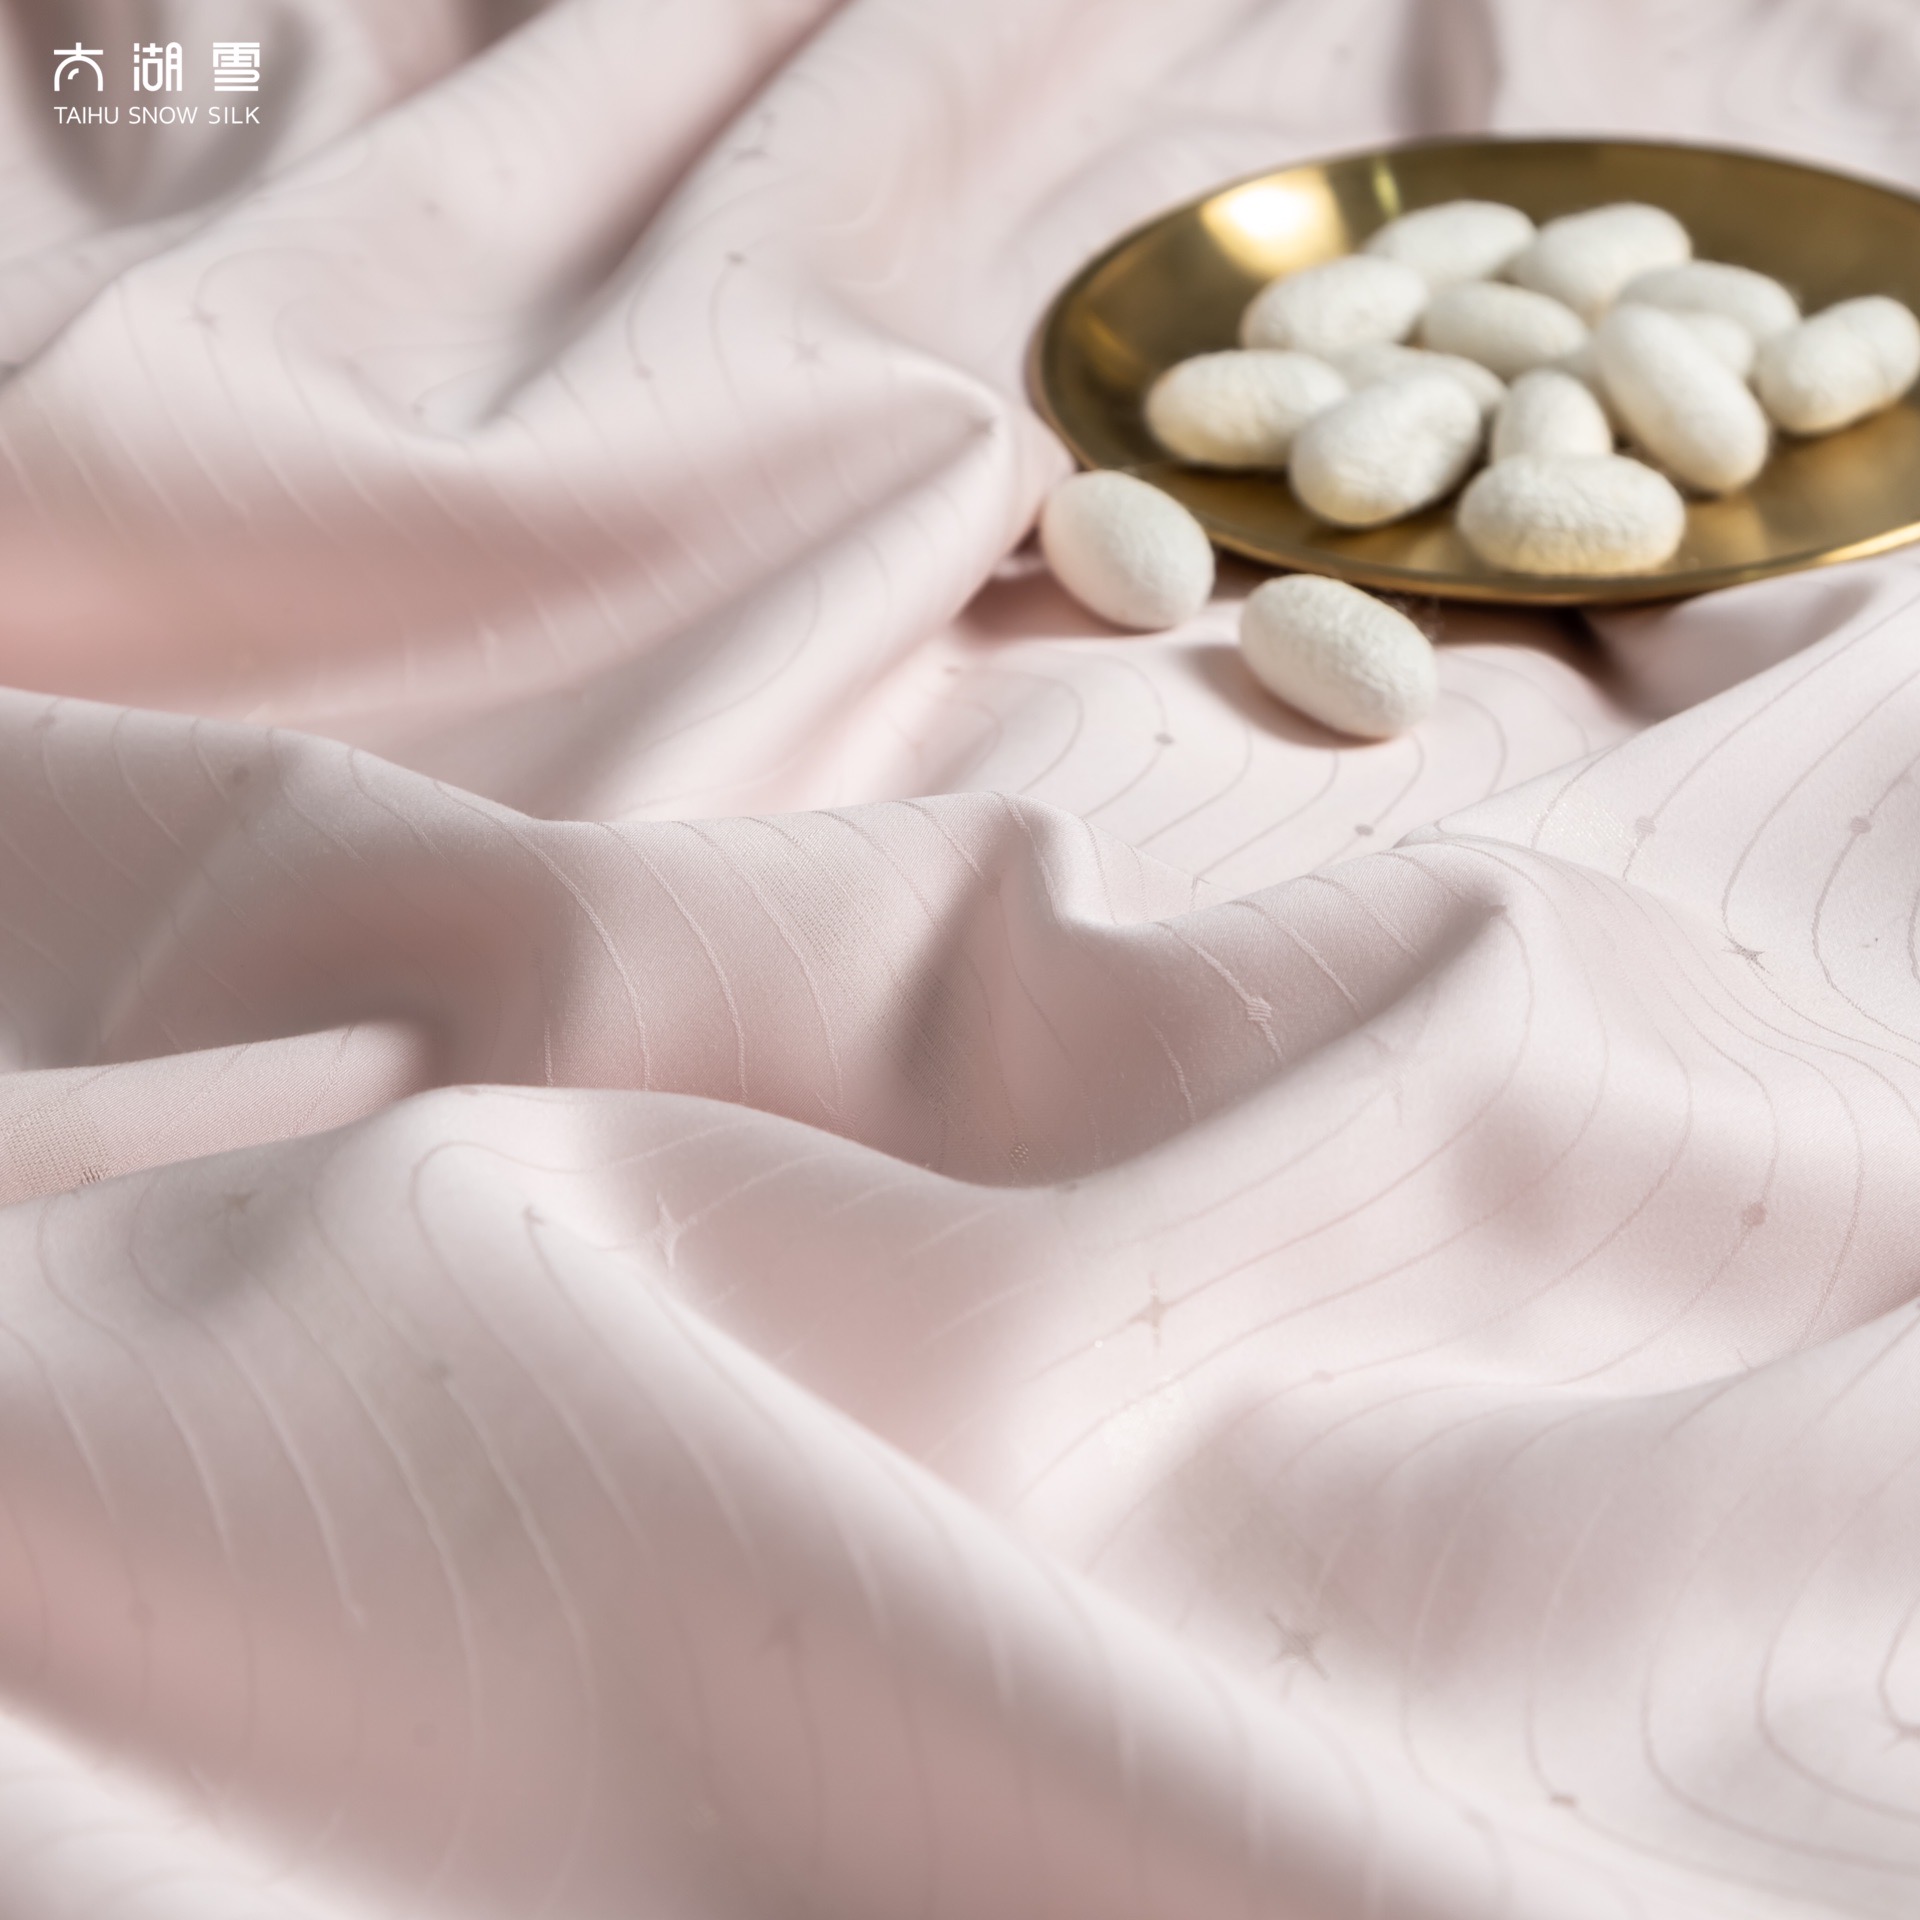 Wholesale OEKO-Tex 100% Mulberry pink summer duvet new design summer quilt cool feeling silk thin quilt